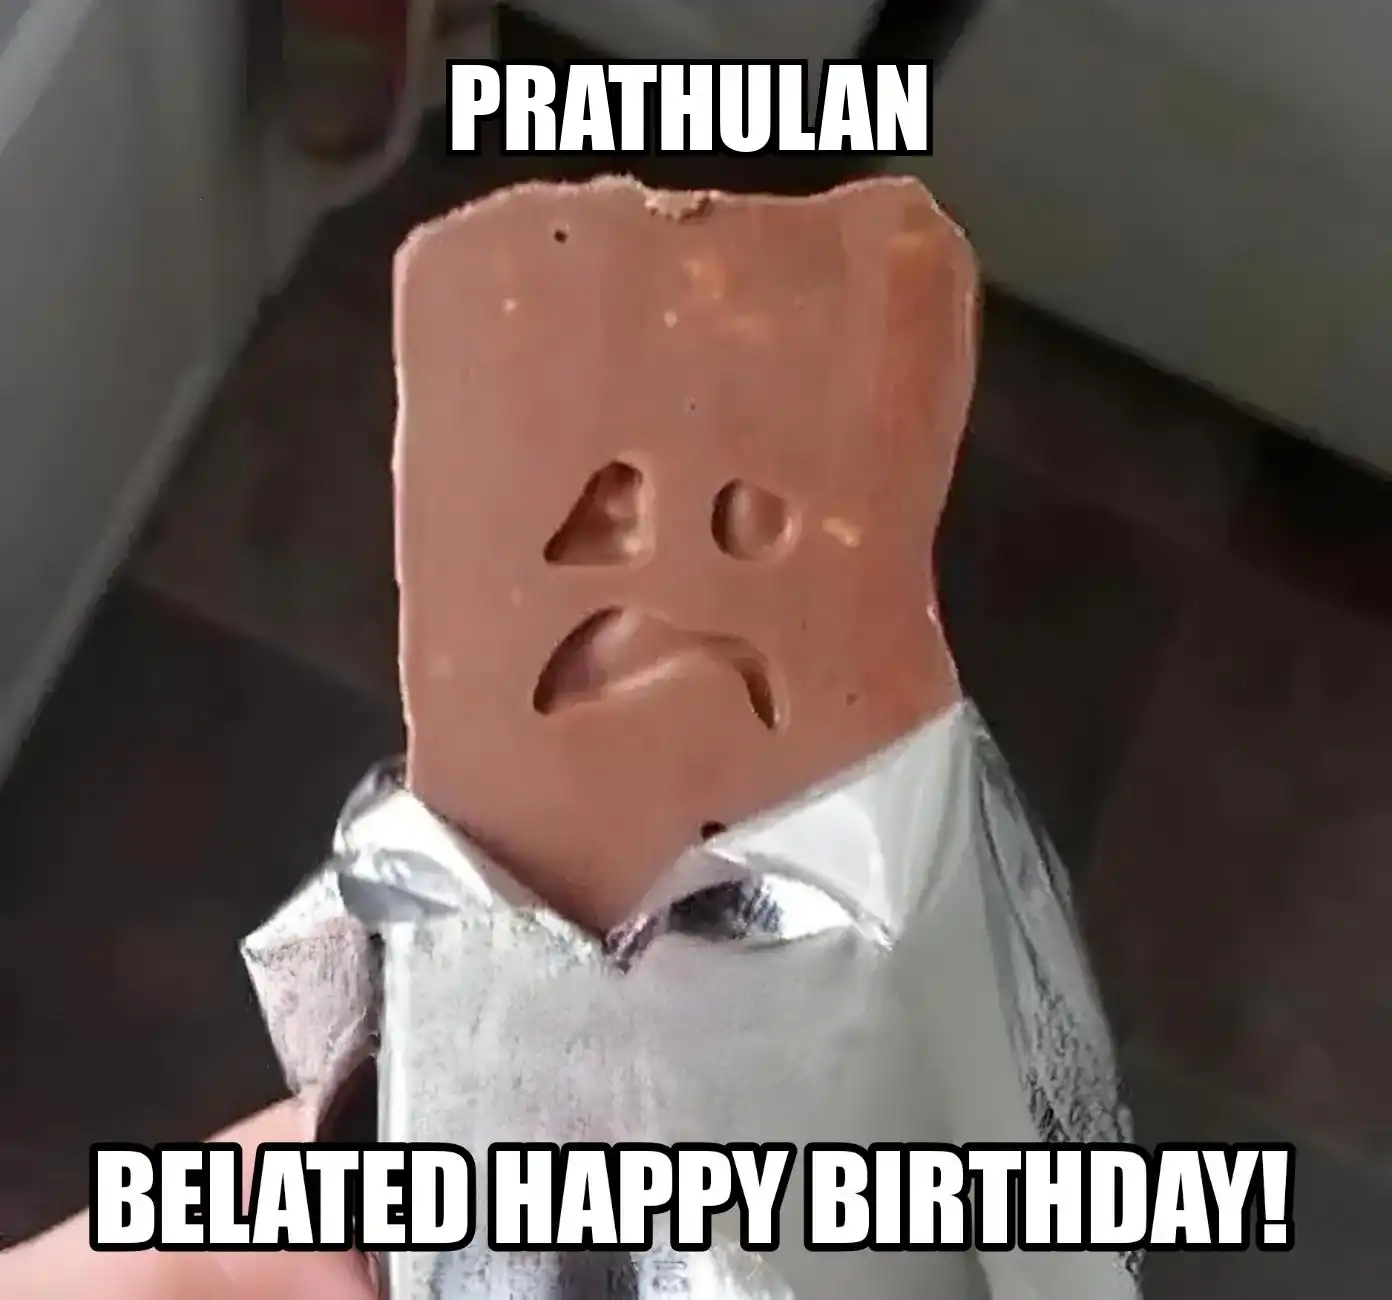 Happy Birthday Prathulan Belated Happy Birthday Meme